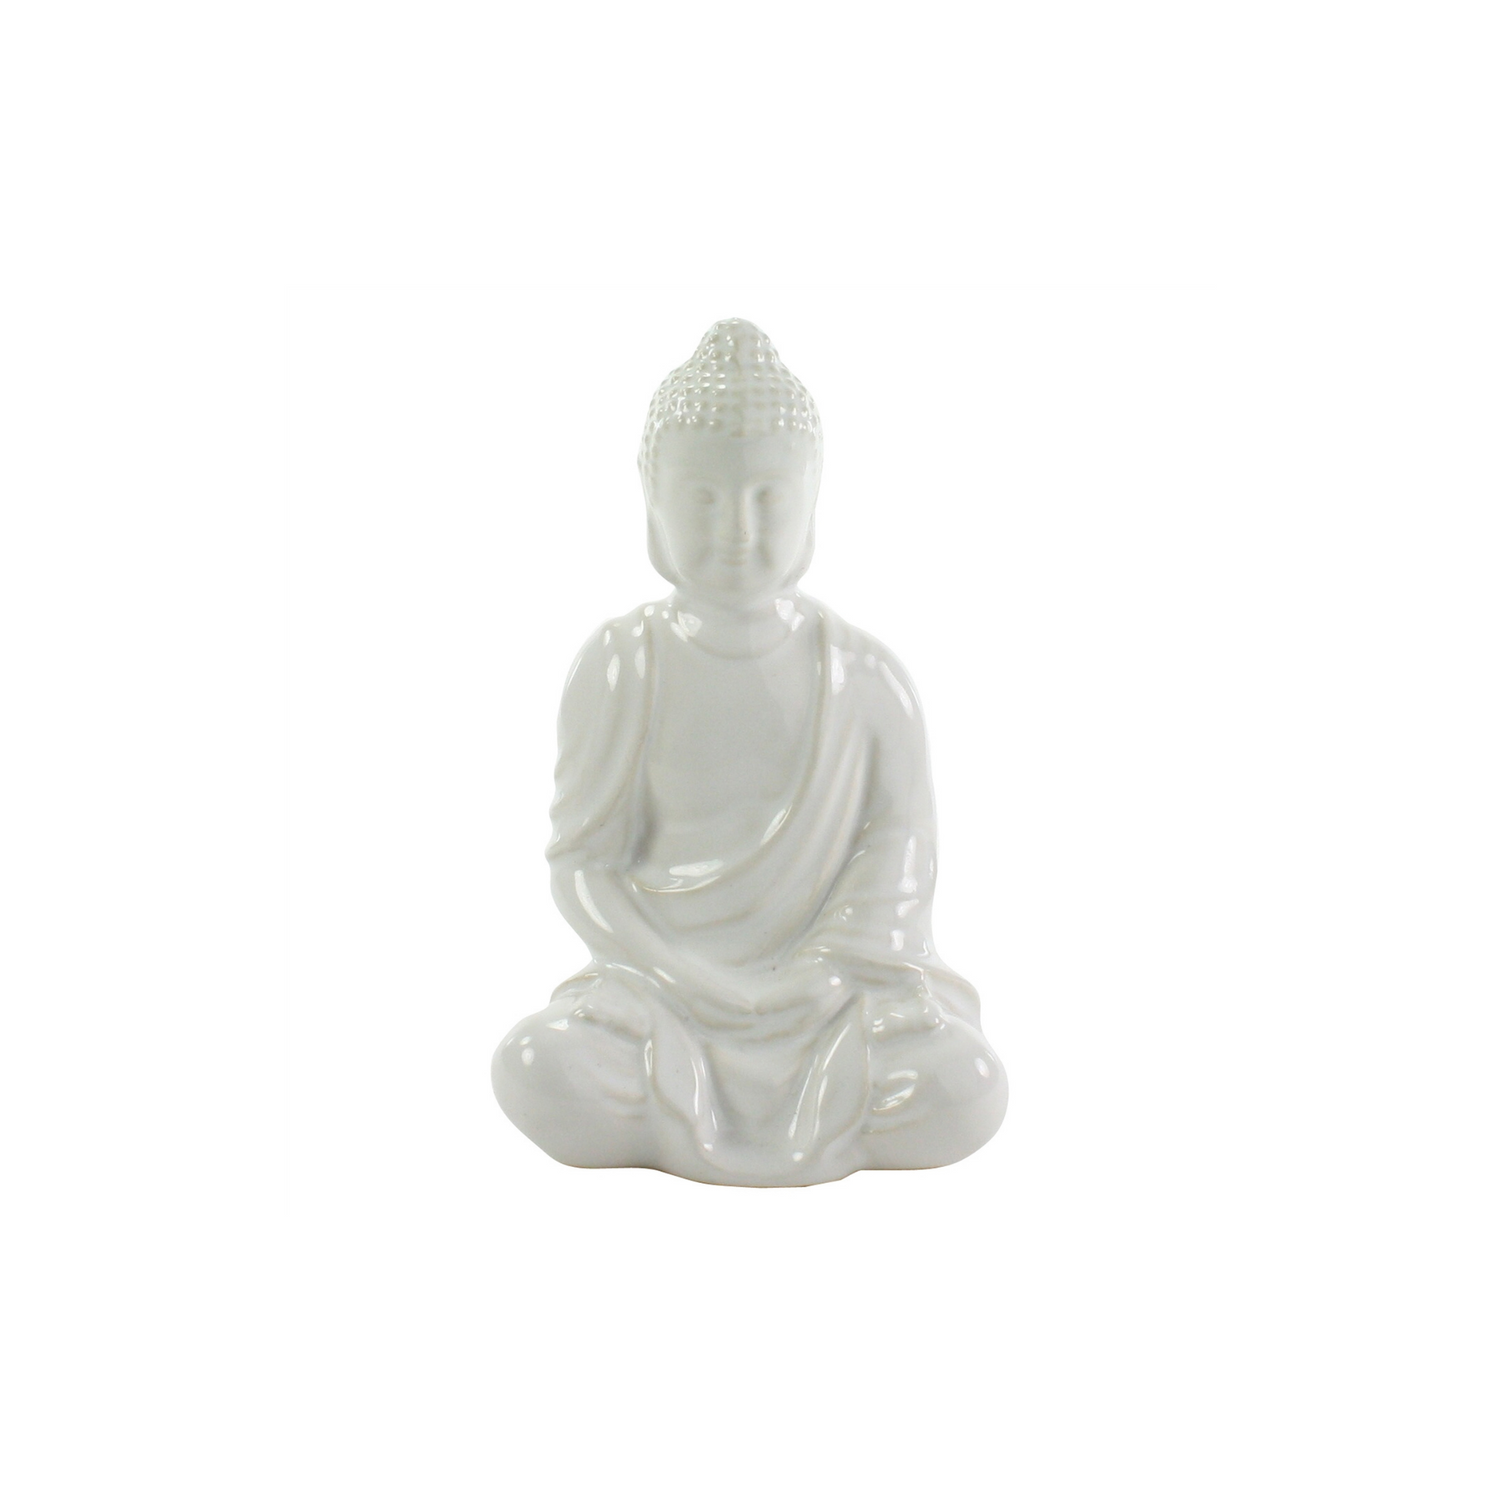 White ceramic sitting buddha statue 